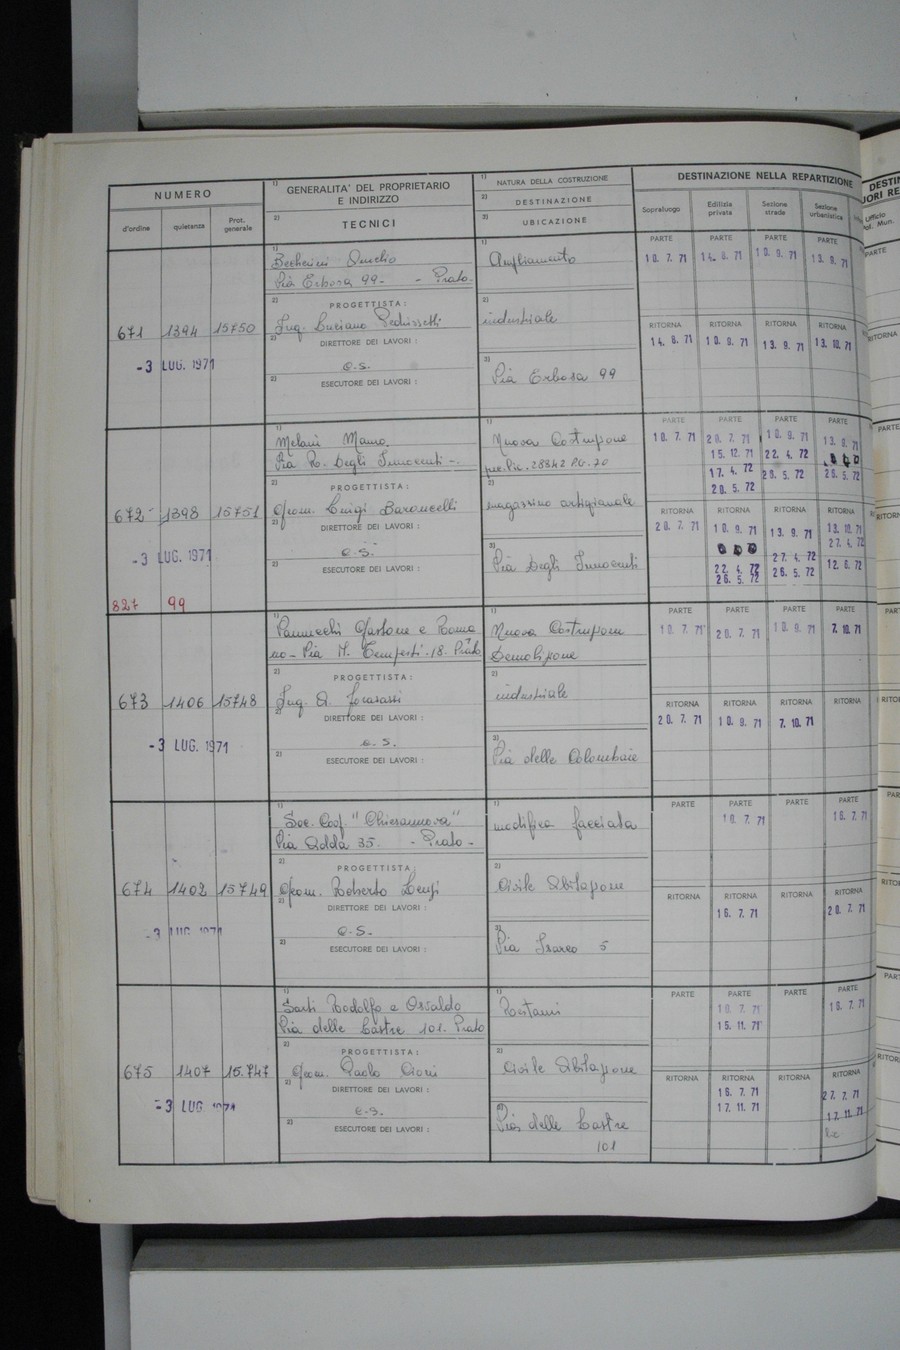 Foto del lato sinistro del registro con i dati della pratica 671/1971